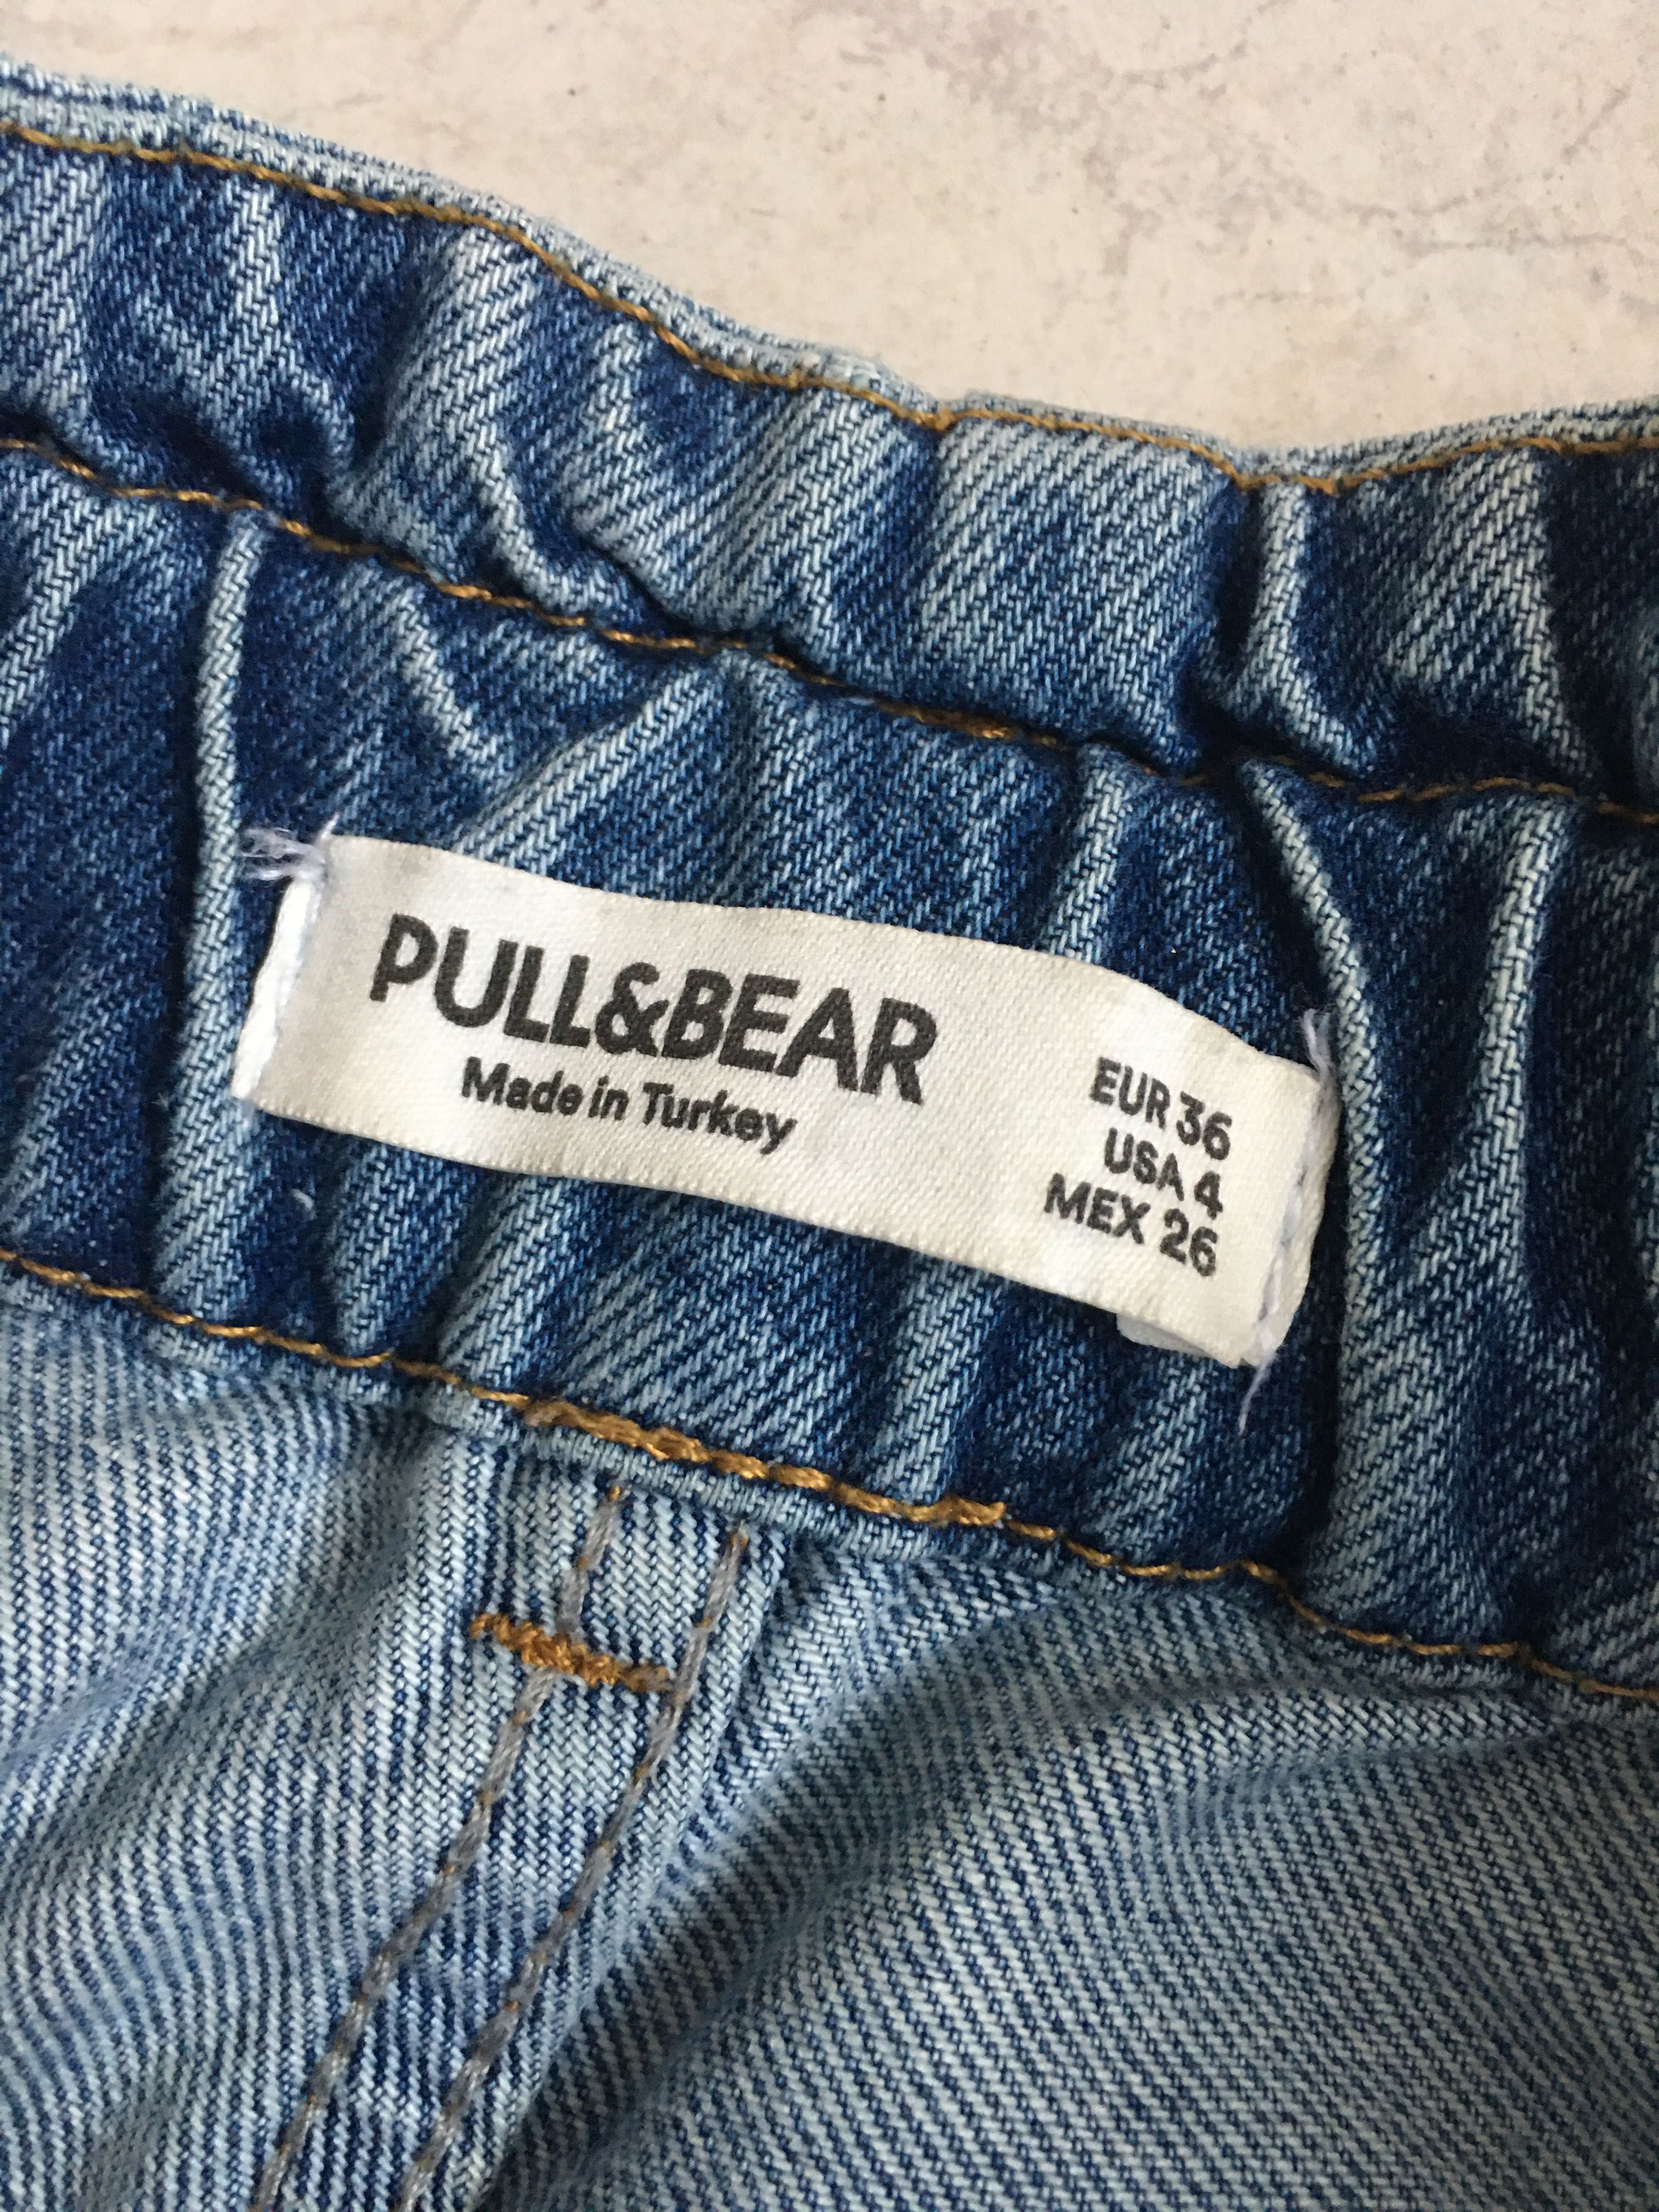 Spodnie Pull&bear roz 36